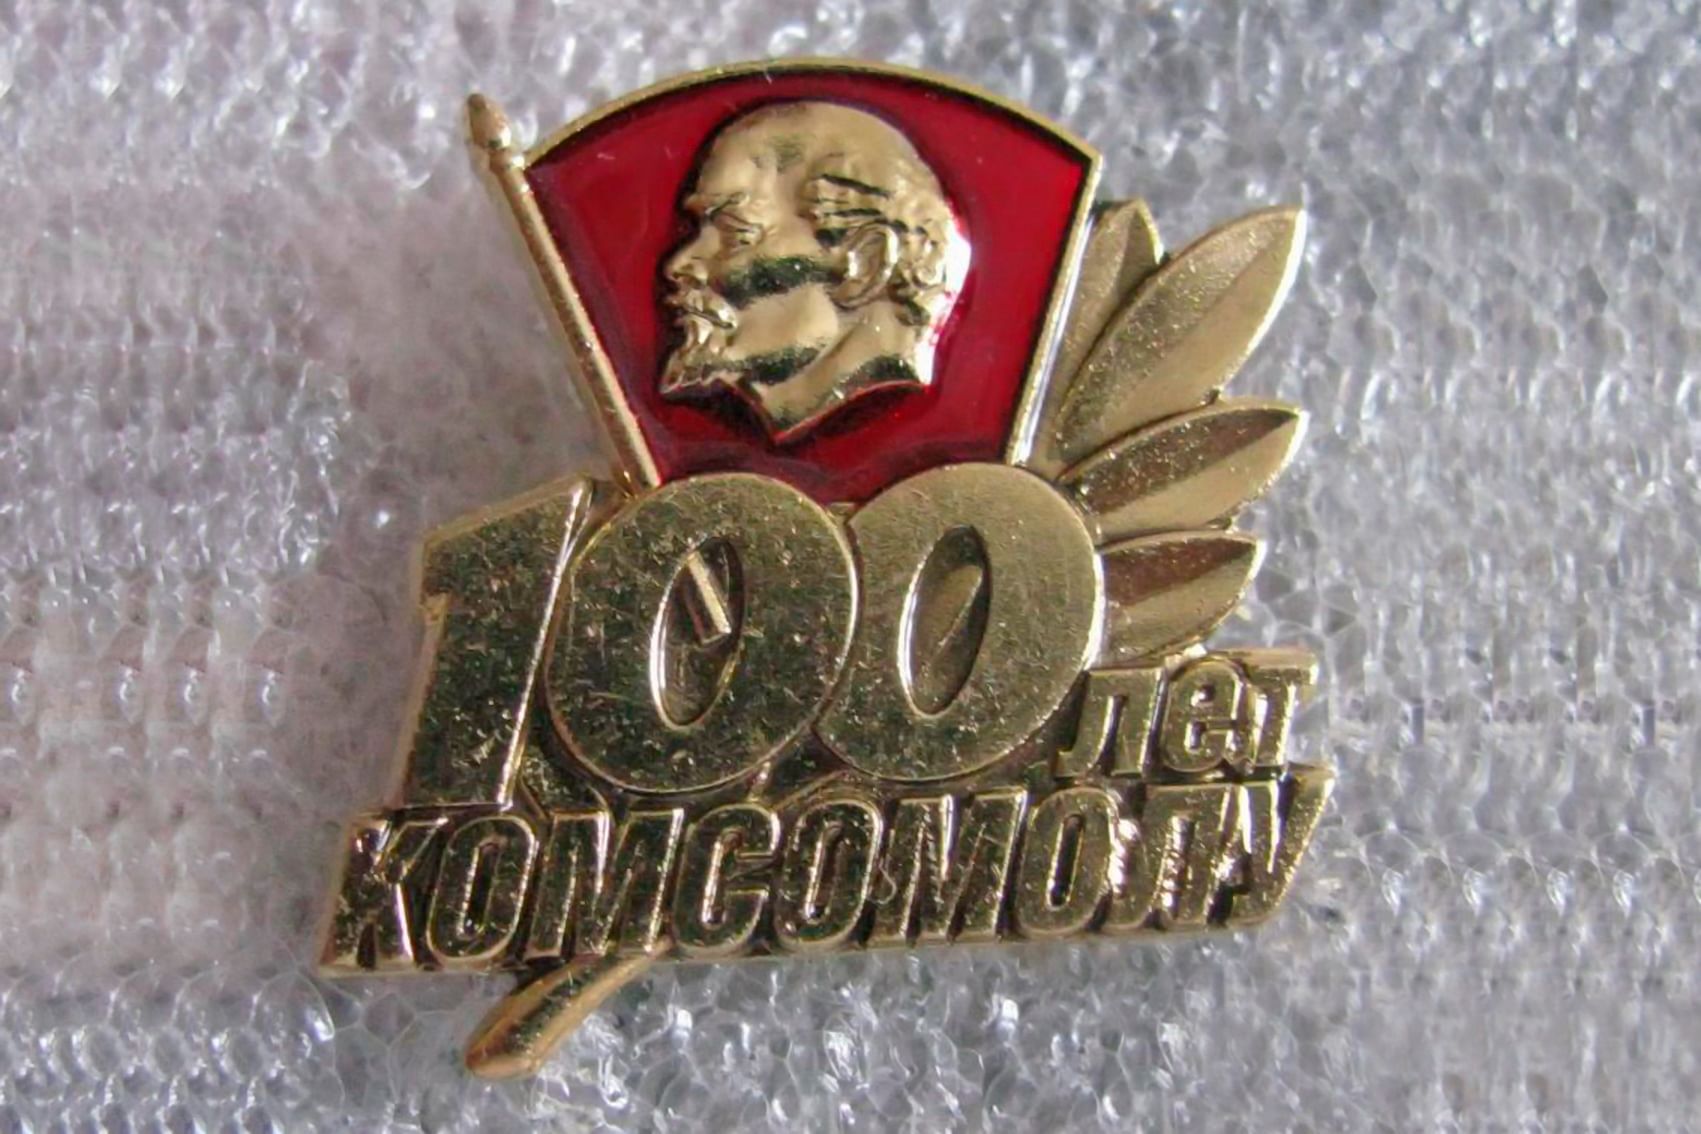 100 Лет ВЛКСМ